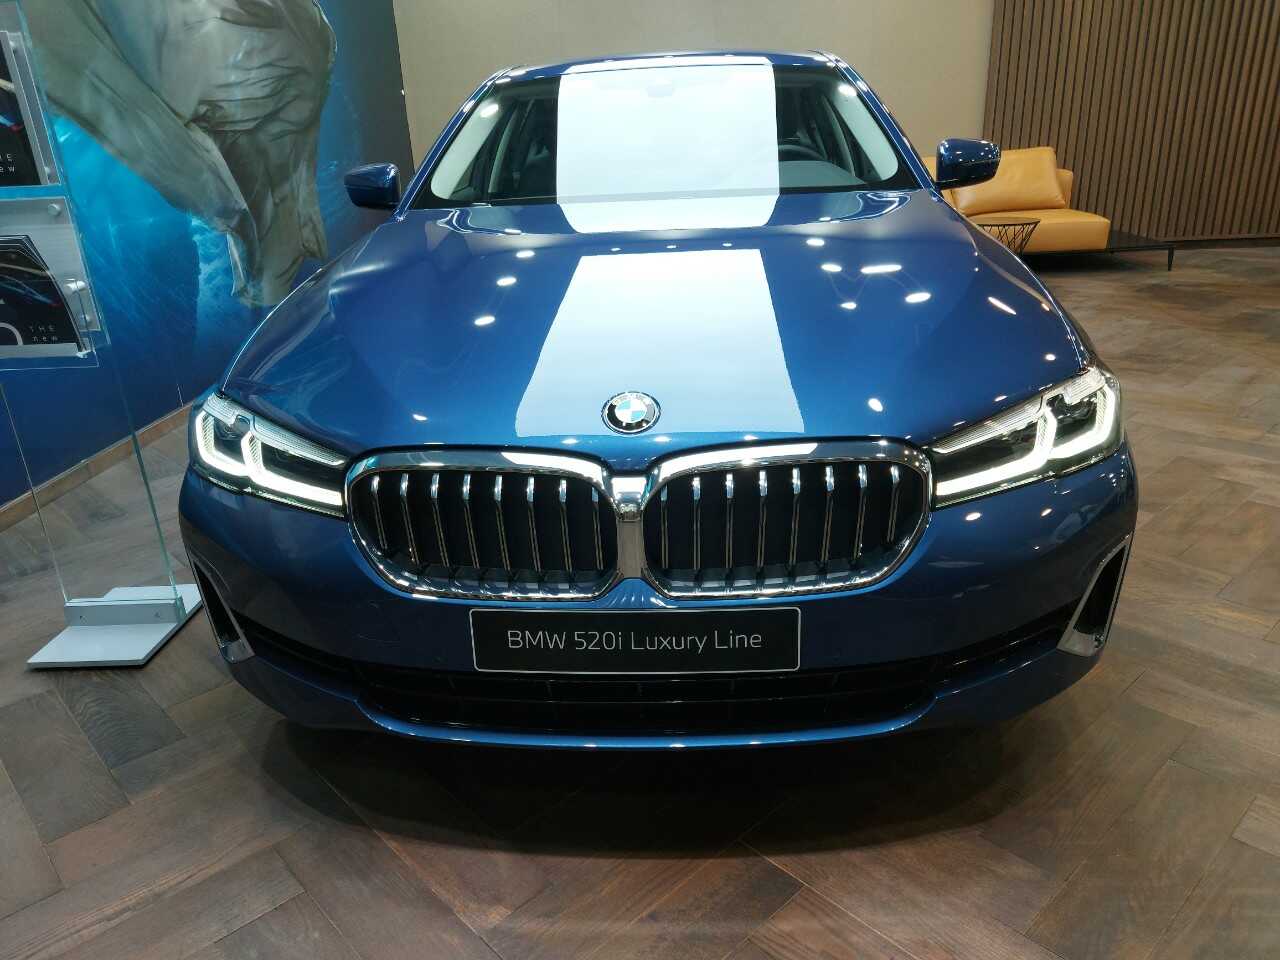 Phần đầu xe BMW 520i Luxury Line.